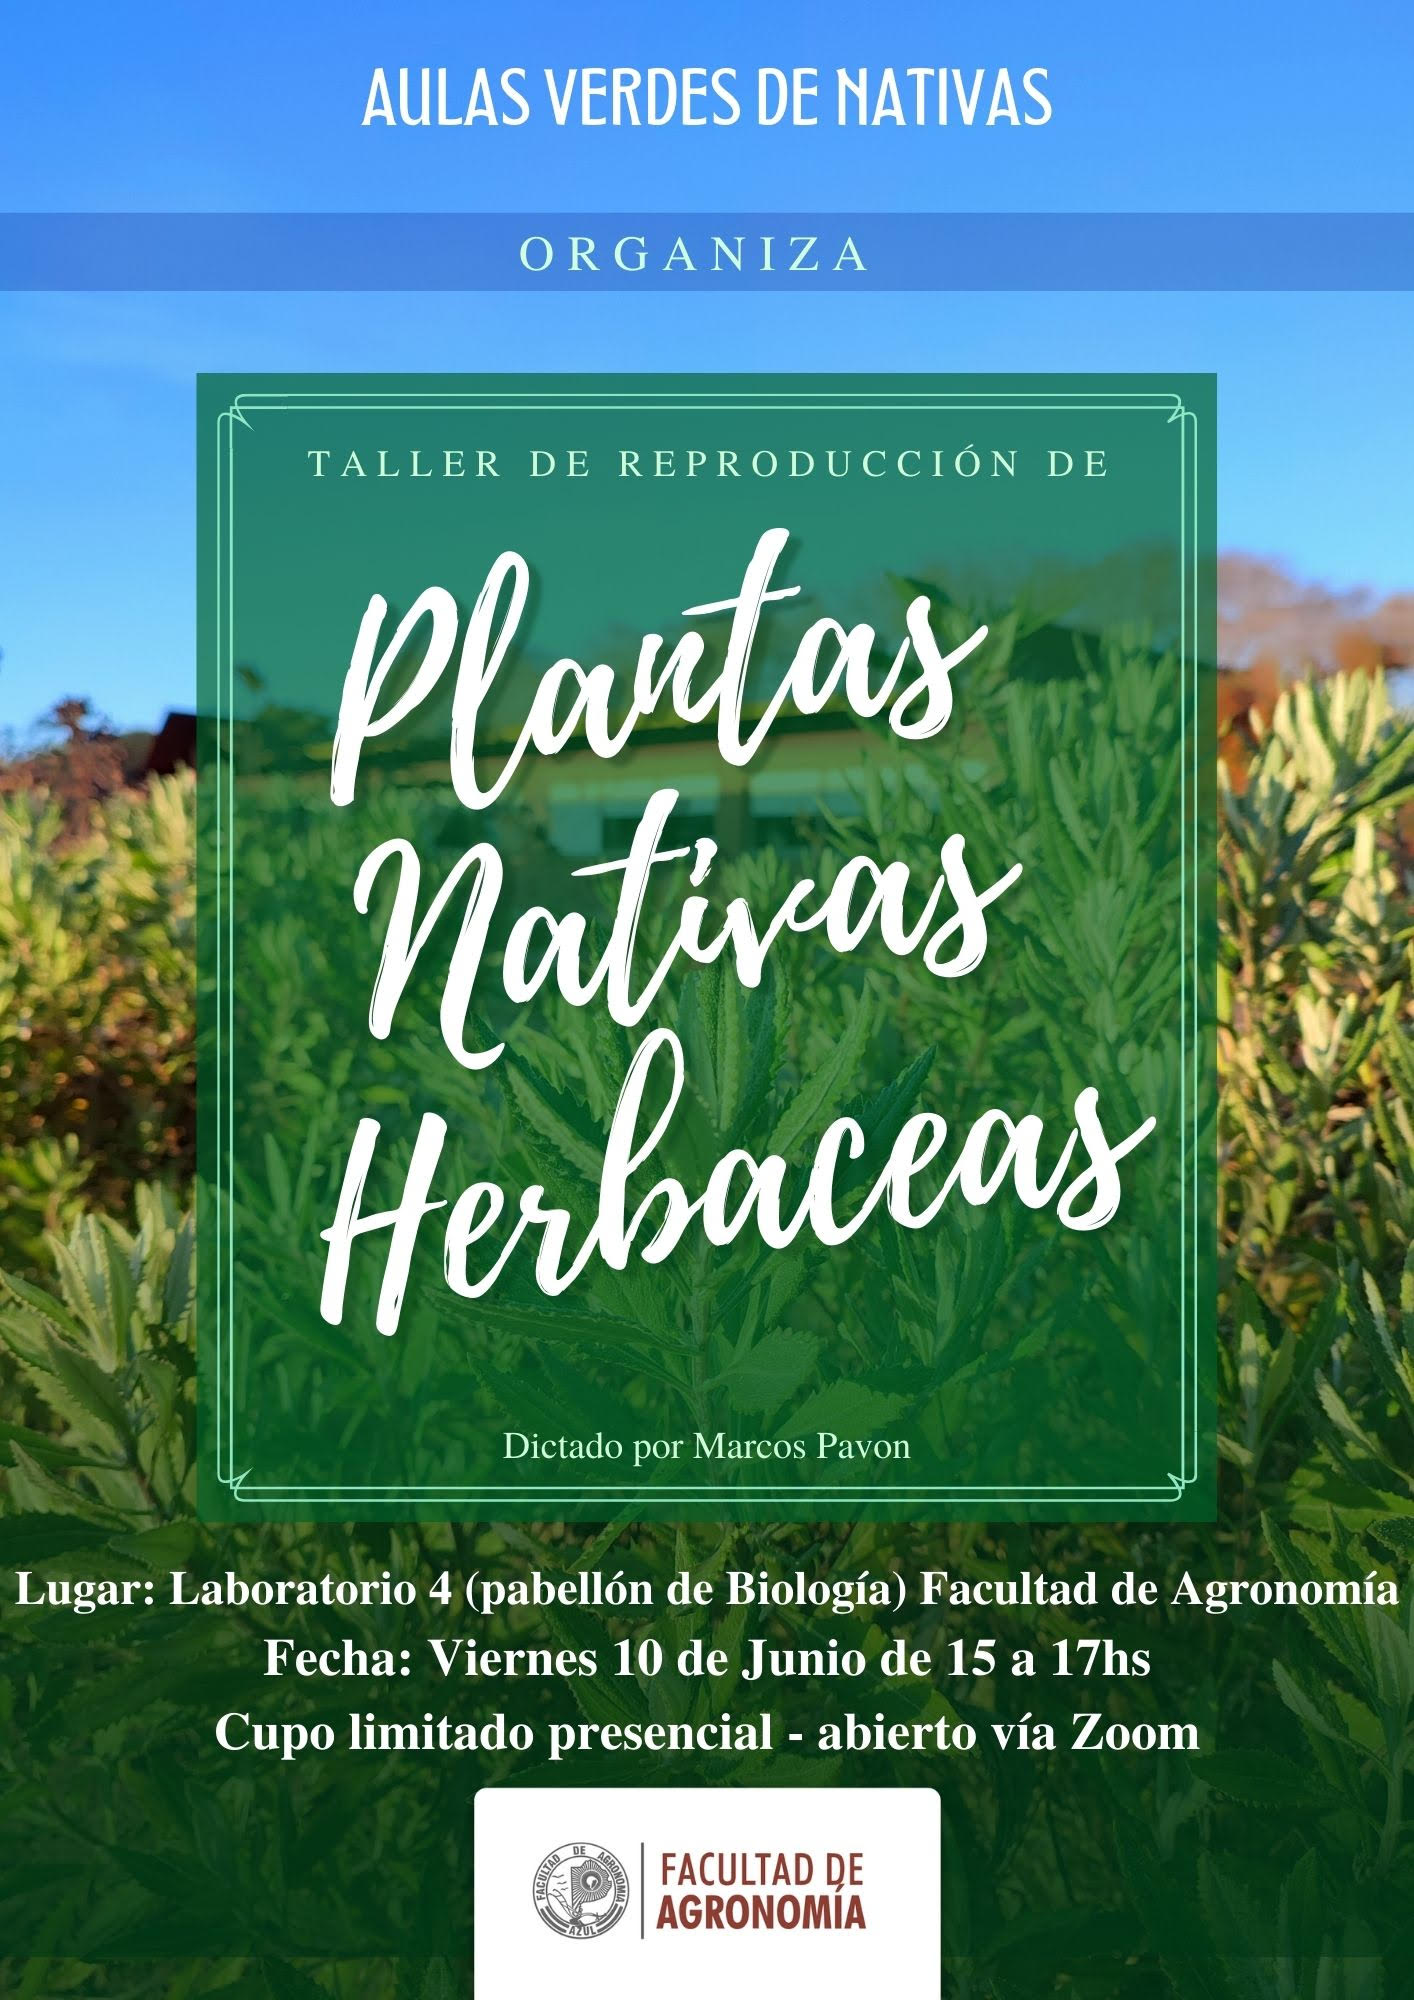 Delegación domingo subasta Taller de reproducción de plantas nativas herbáceas” | Azul es Cultura